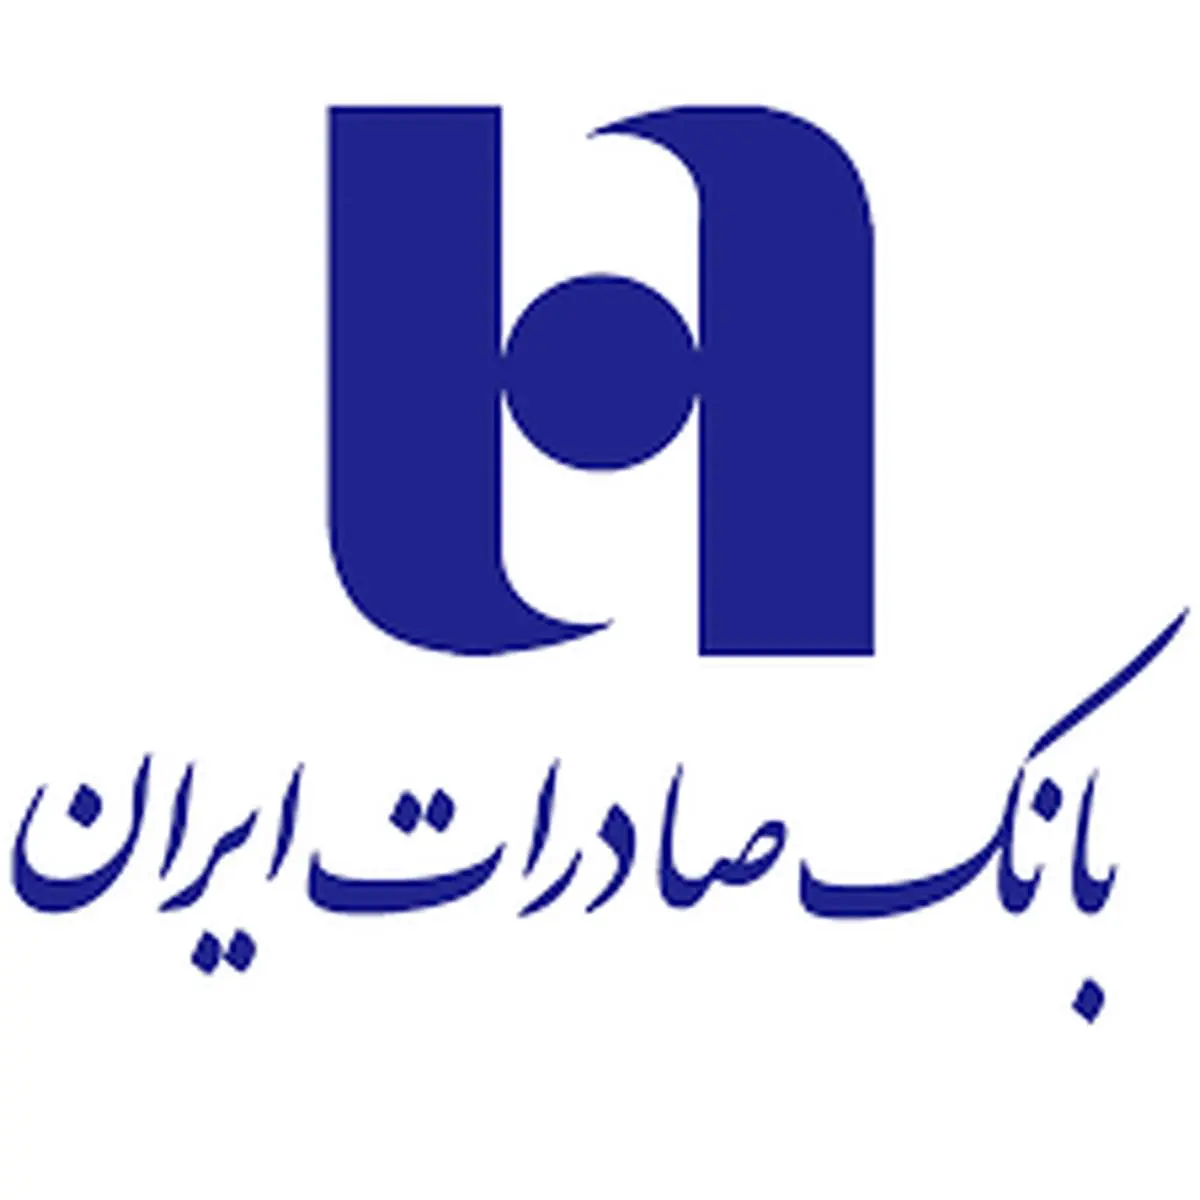 تحلیل نماد وبصادر در بورس به همراه افزایش حاشیه سود بانک صادرات ایران